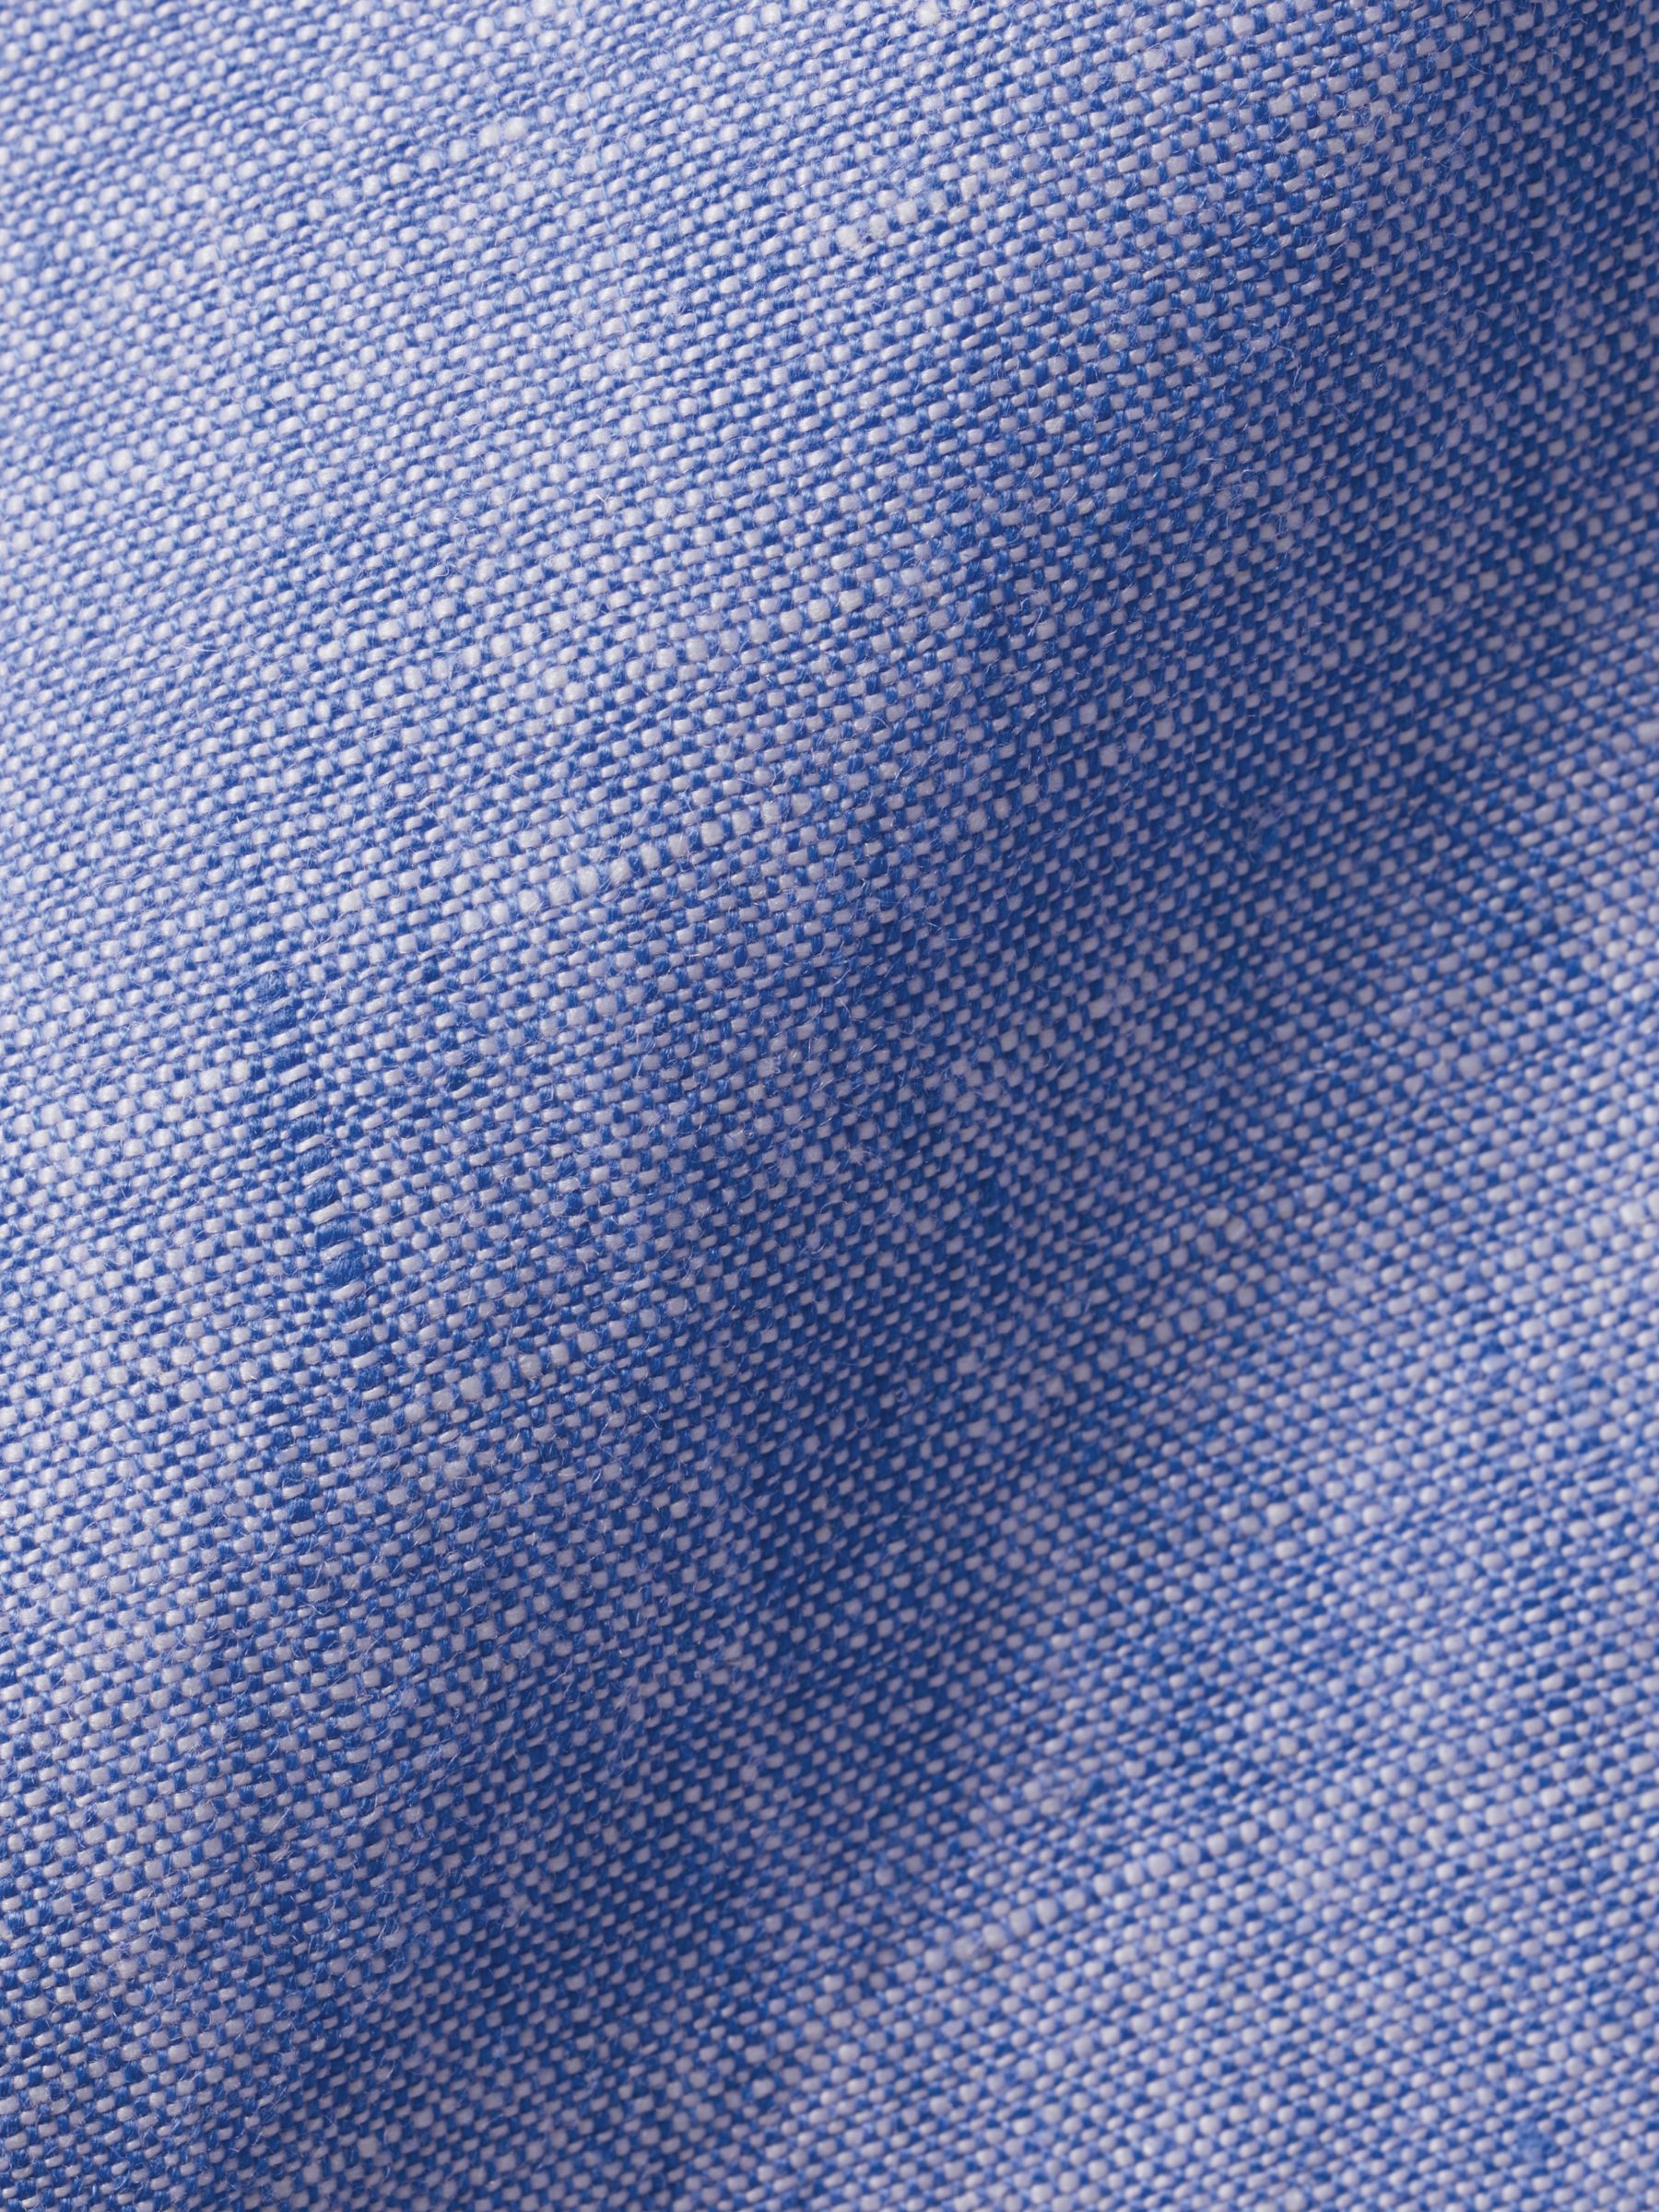 Charles Tyrwhitt Linen Slim Fit Shirt, Cobalt Blue, S